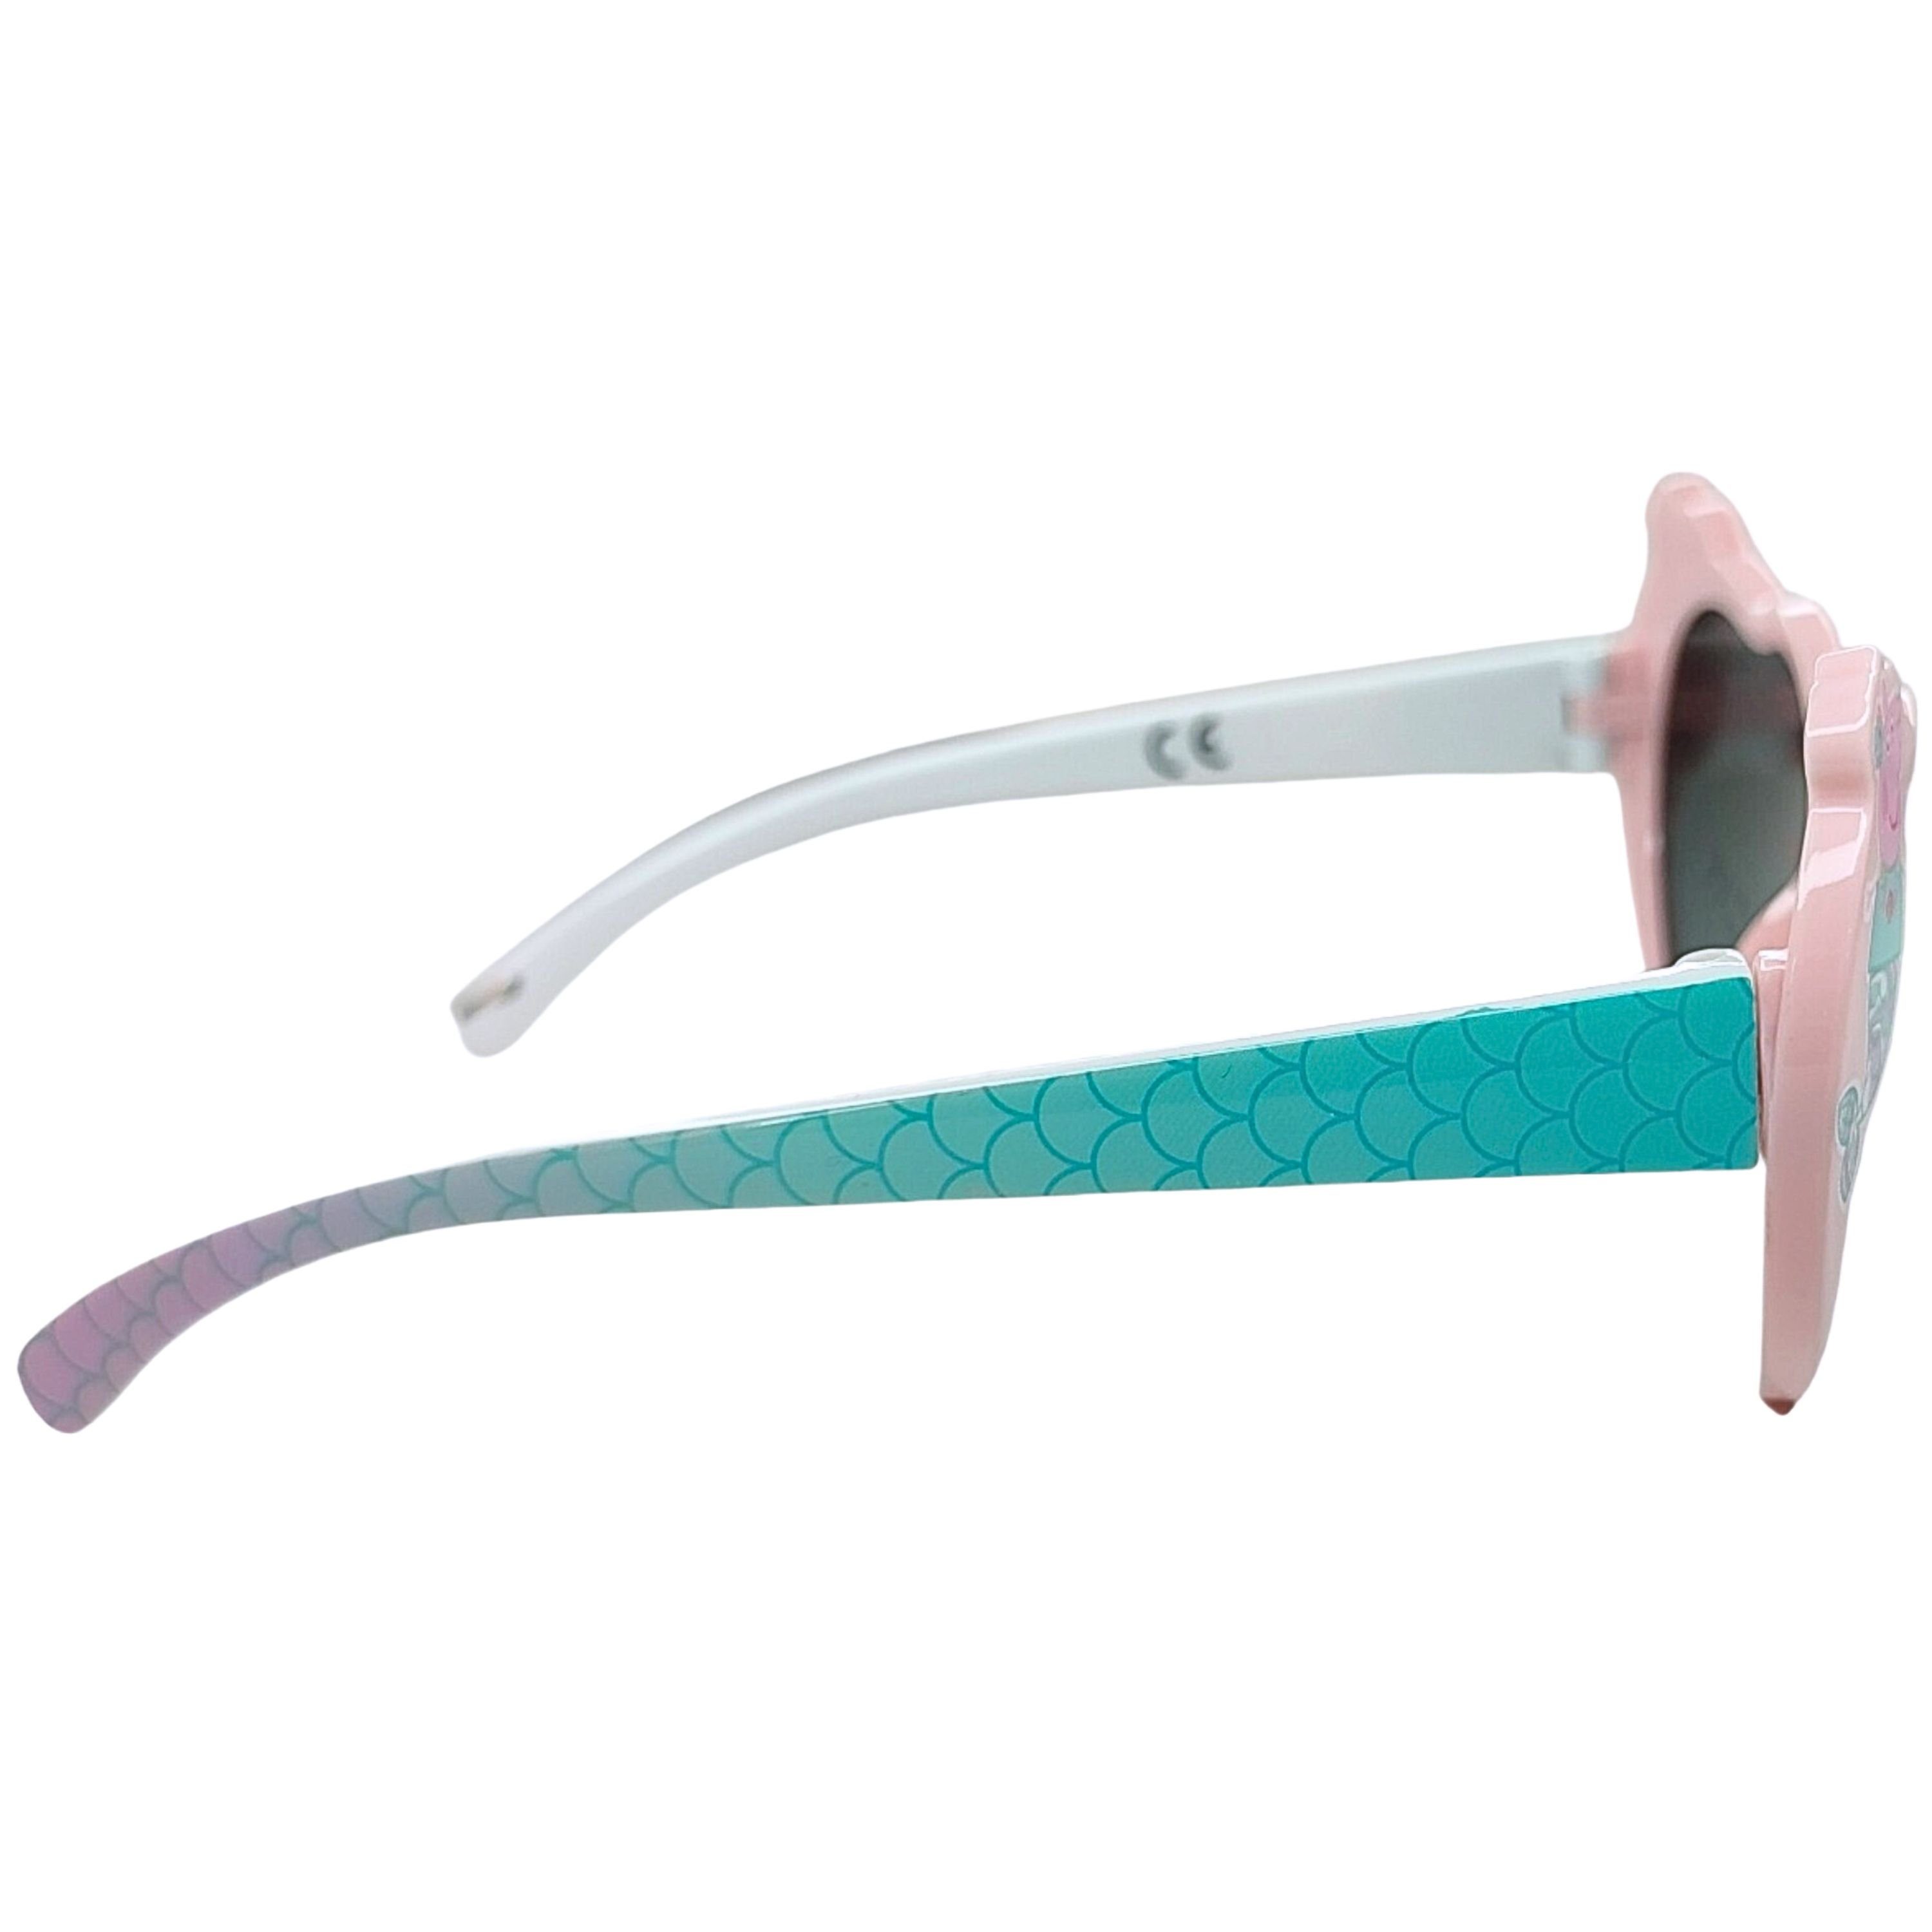 Peppa Wutz Pig 100% in UV Schutz mit Sonnenbrille Herzform Peppa Meerjungfrau